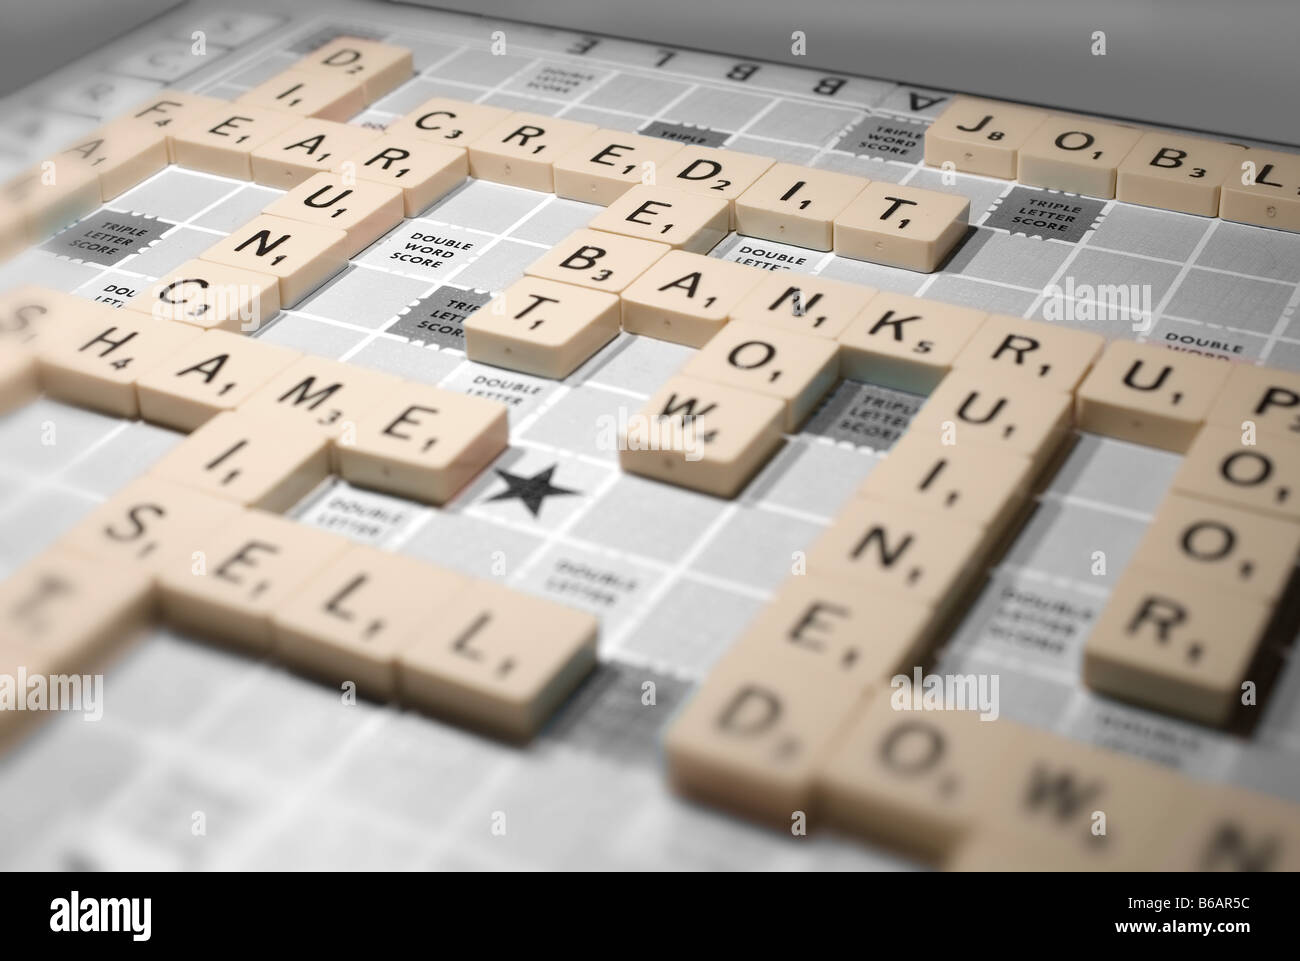 Scrabble una recesión mundial pone de relieve las cuestiones de la crisis crediticia y otras consecuencias financieras Foto de stock